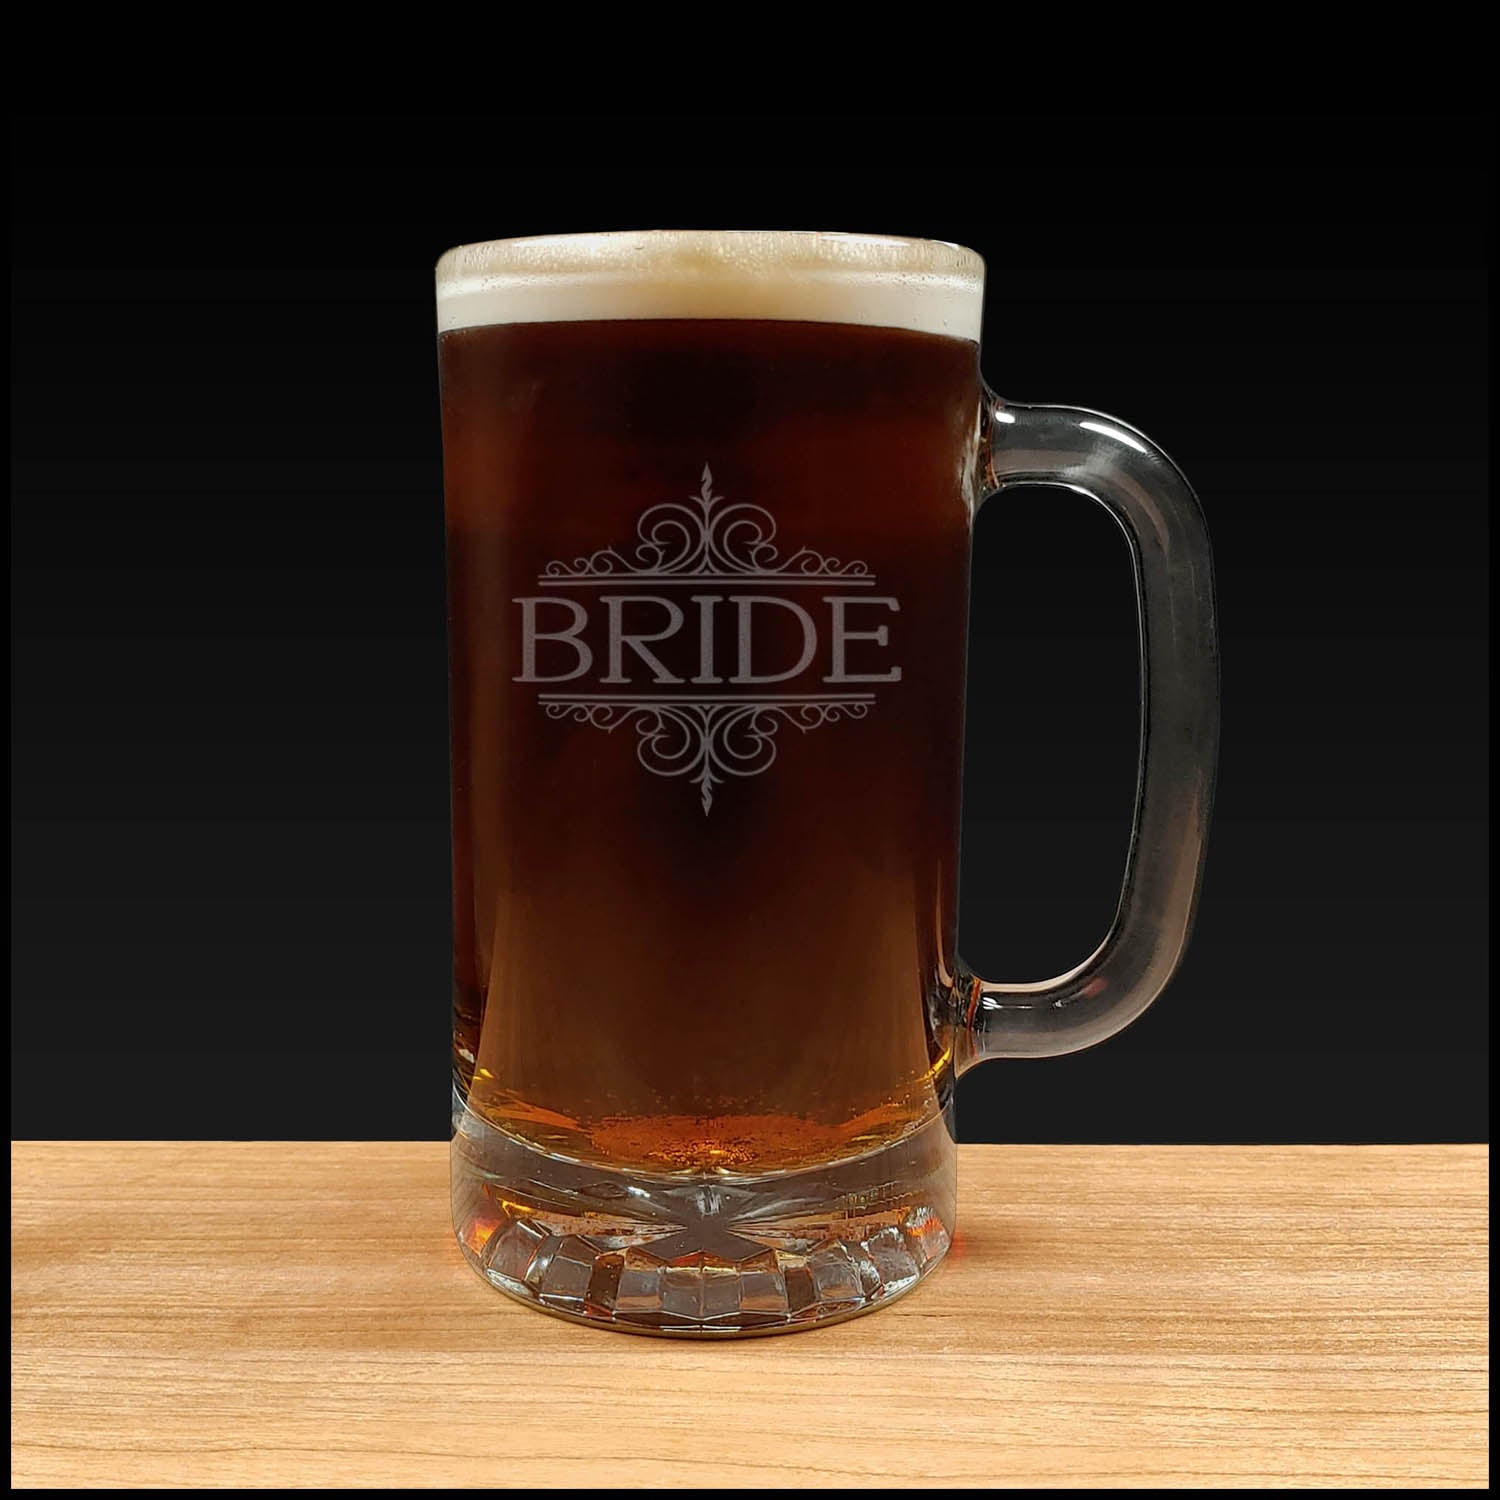 Classical Bride Beer Mug design - Dark Beer - Copyright Hues in Glass